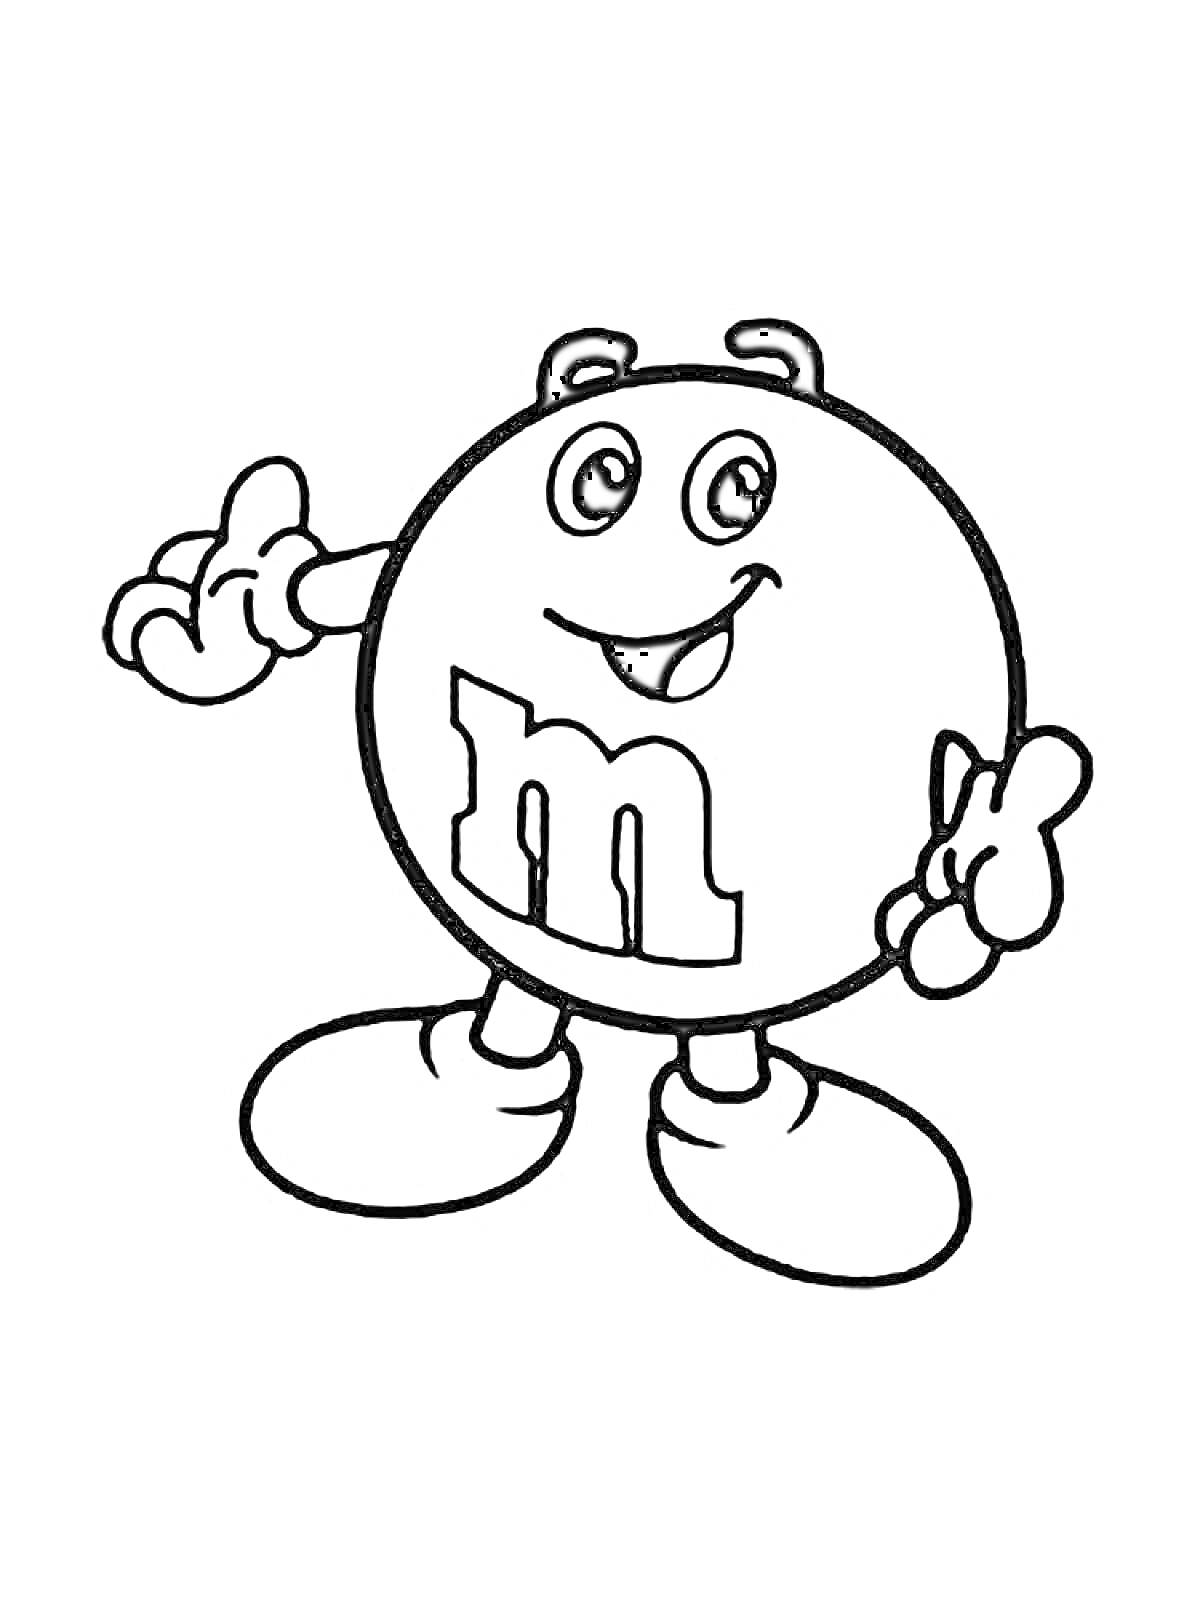 Раскраска M&M's персонаж с поднятой рукой и поднятым пальцем